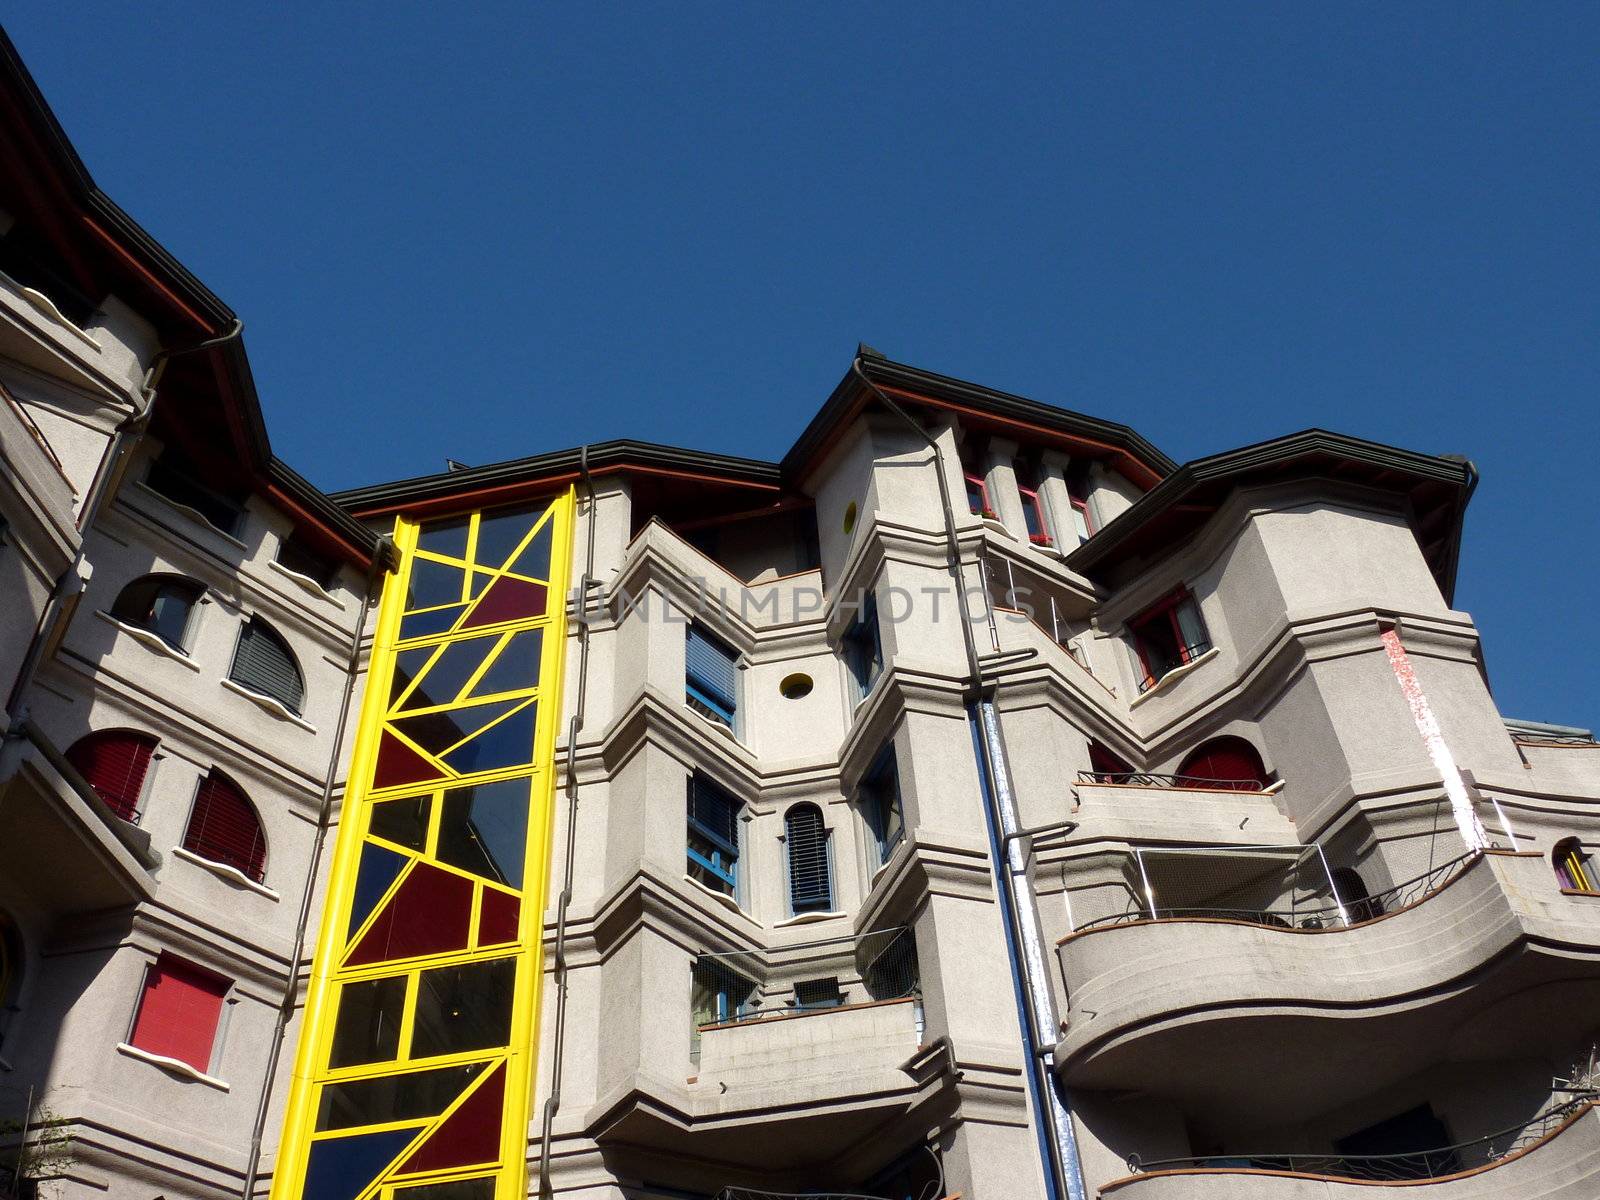 Facade of an eccentric building by Elenaphotos21